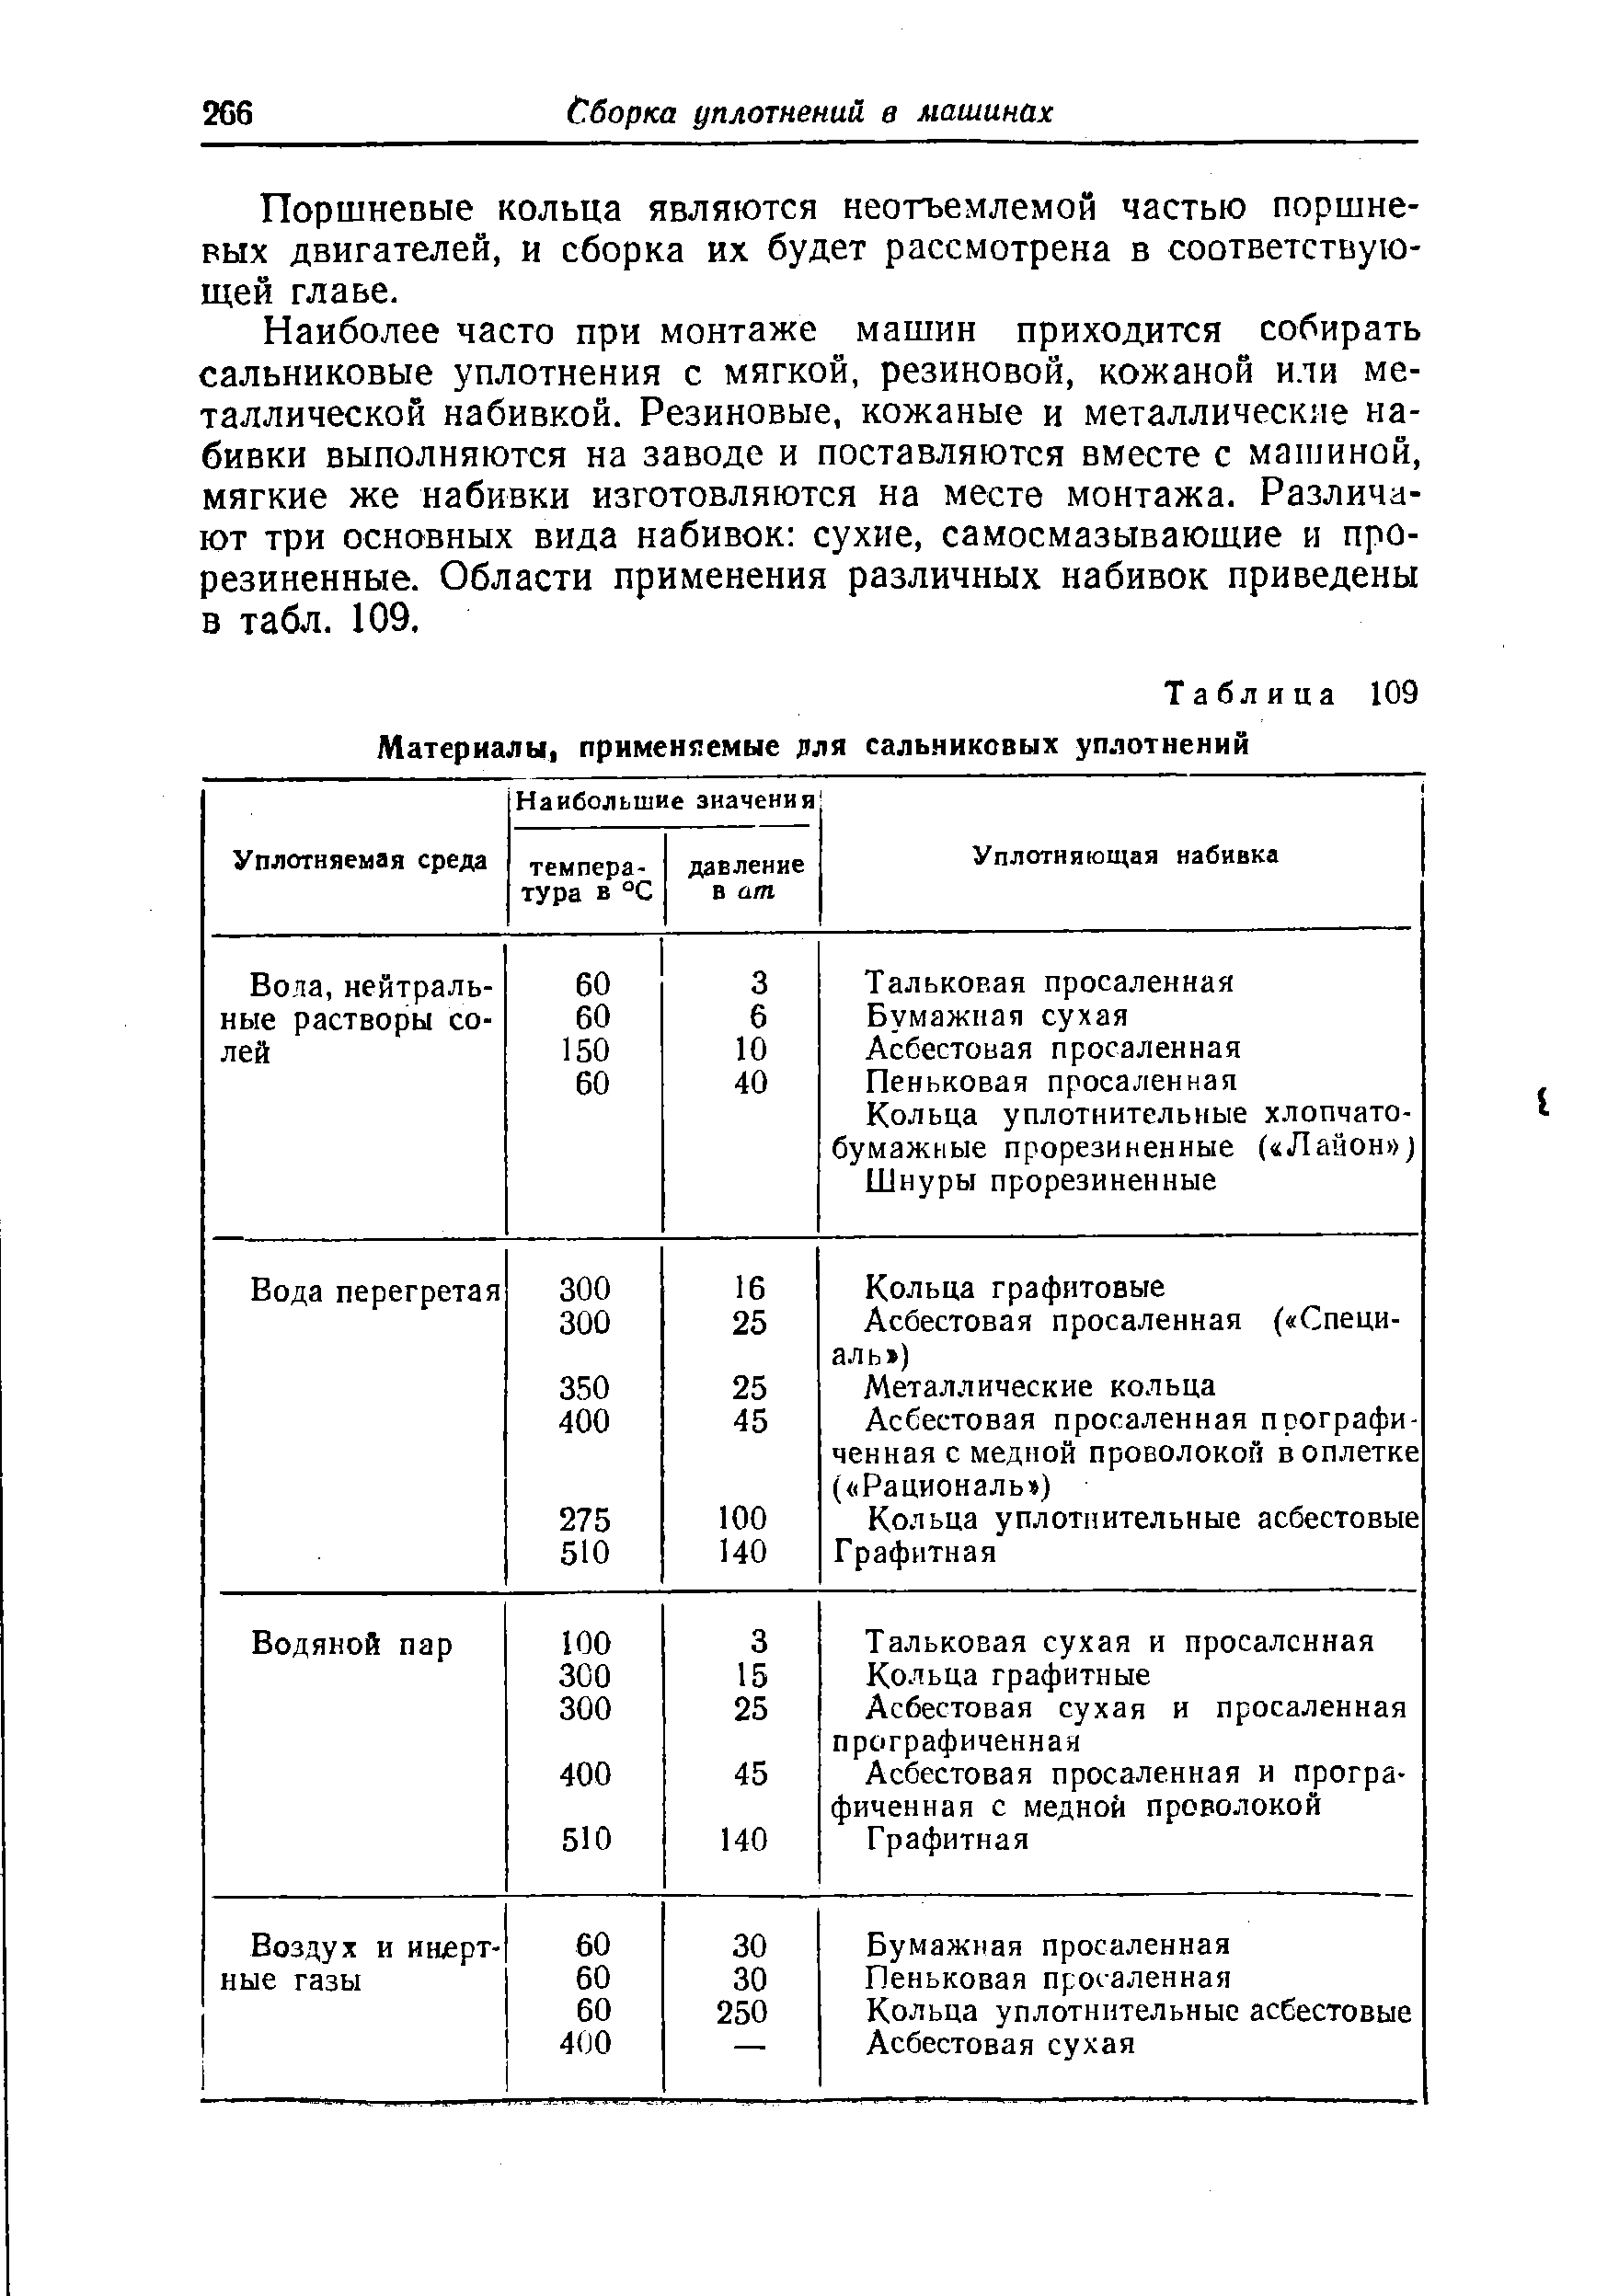 Таблица 109 Материалы, применяемые лля сальниковых уплотнений
